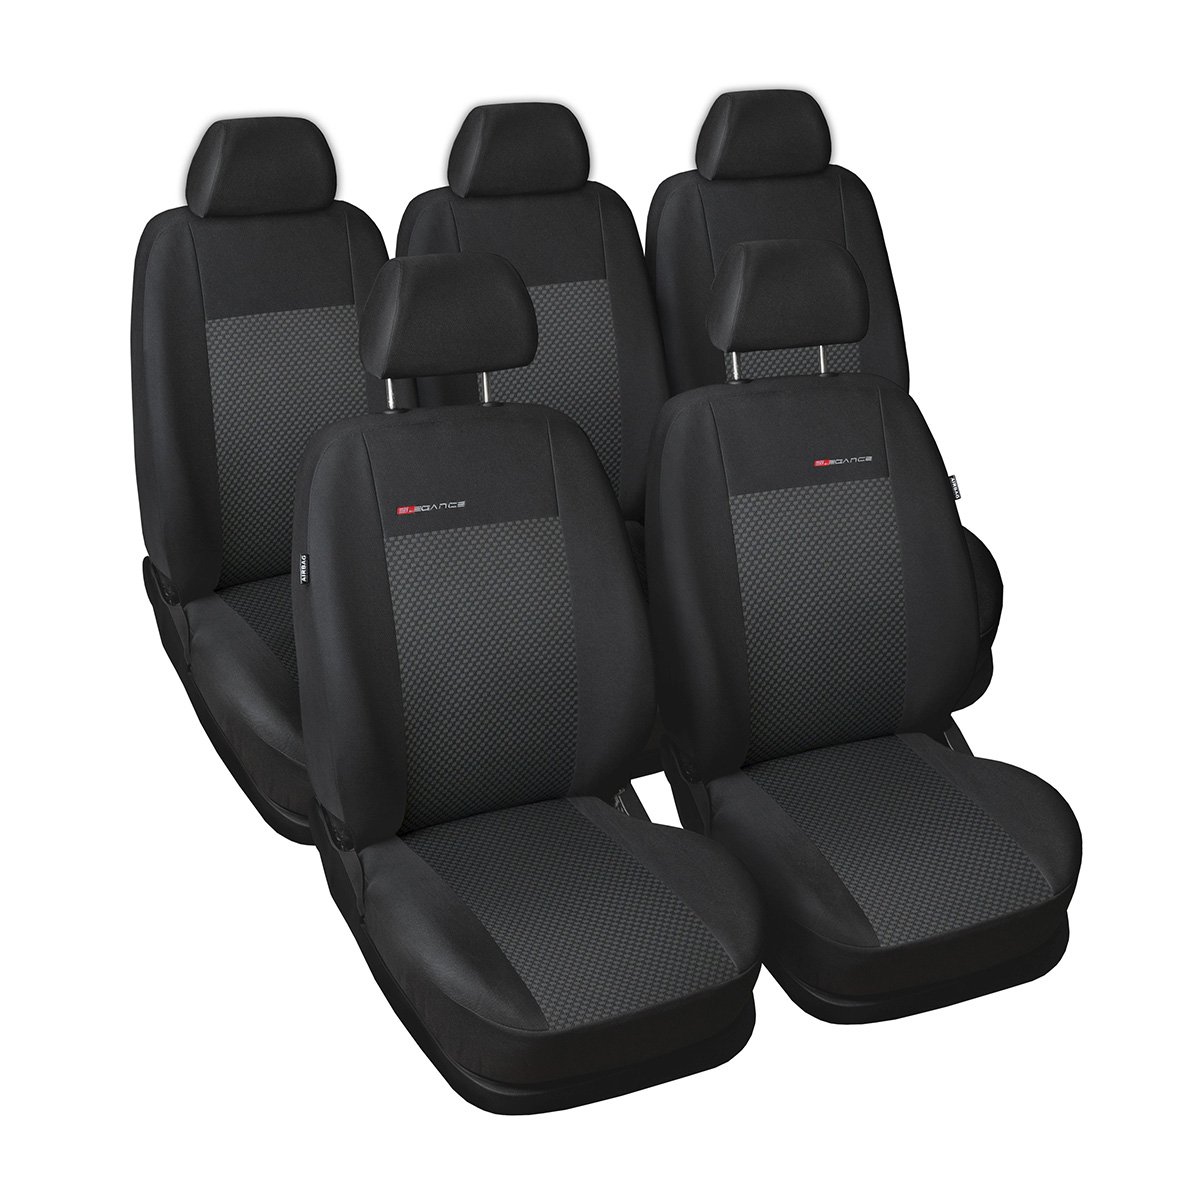 Mossa - Maßgeschneiderte Sitzbezüge Auto kompatibel mit Seat Alhambra Van (1996-2010) - 5 Sitze - Autositzbezüge Schonbezüge für Autositze - E3 von Mossa